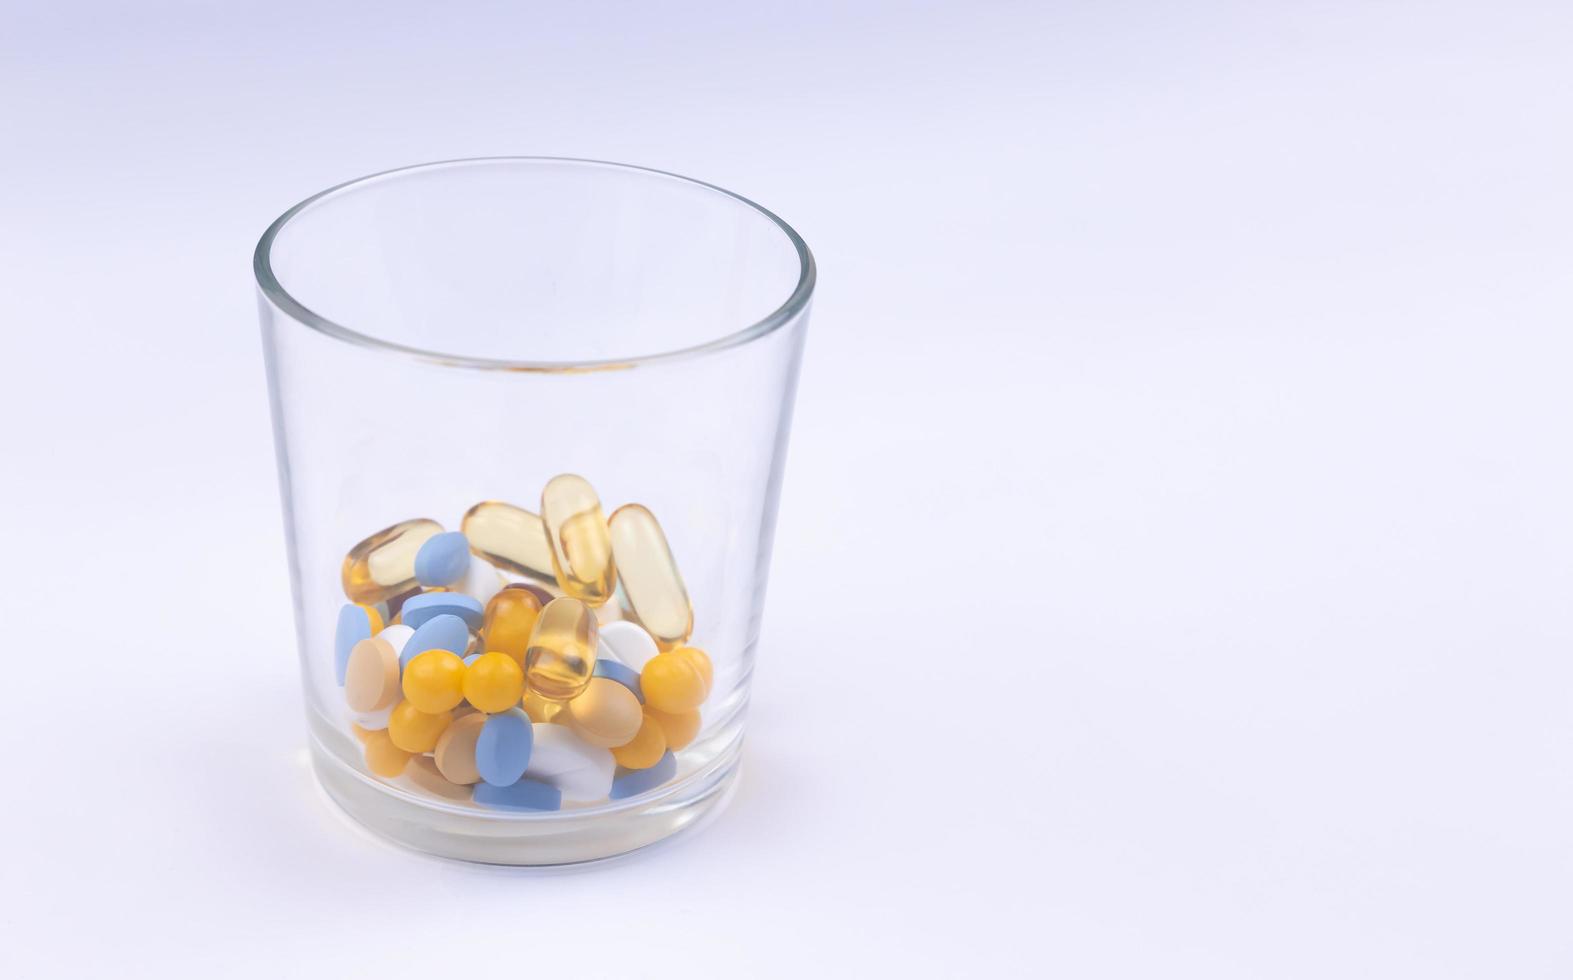 dose des pilules colorées dans le verre photo